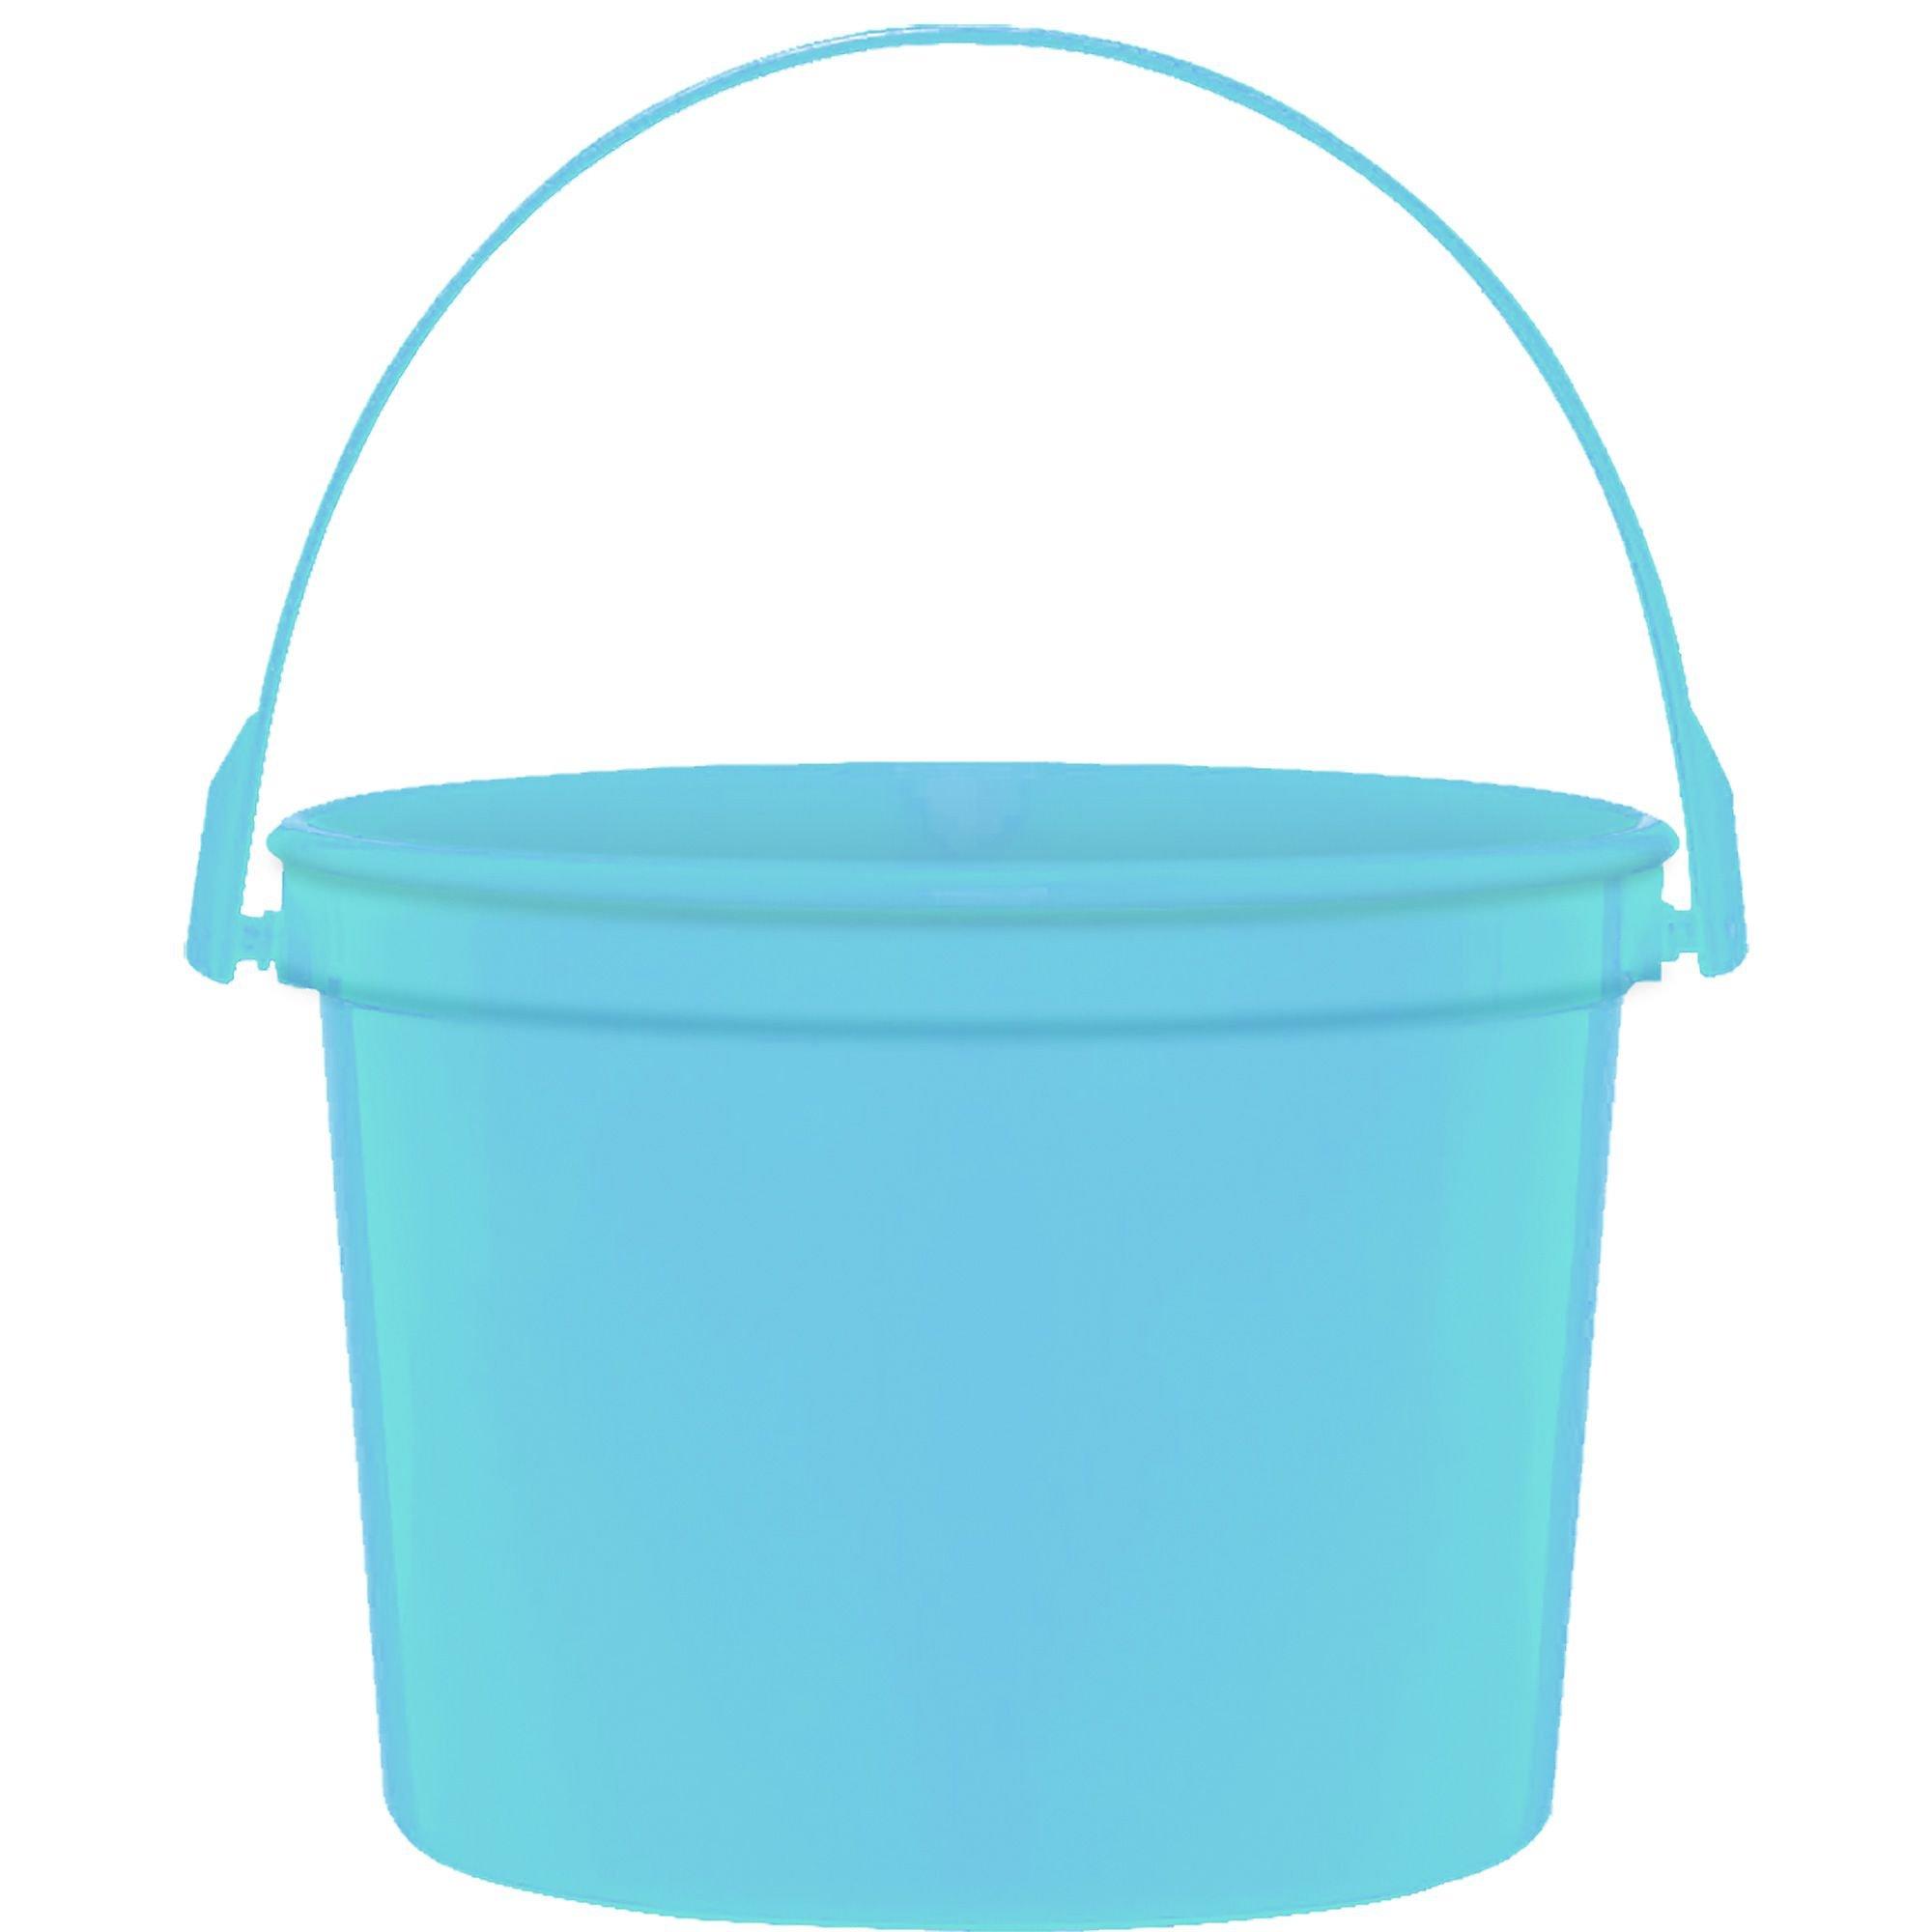 Veemoon Plastic Barrel Buckets with Lids Round Plastic Tub Small Bucket  with Lid Beach Buckets Plastic Bucket with Lid Water Container Portable  Water